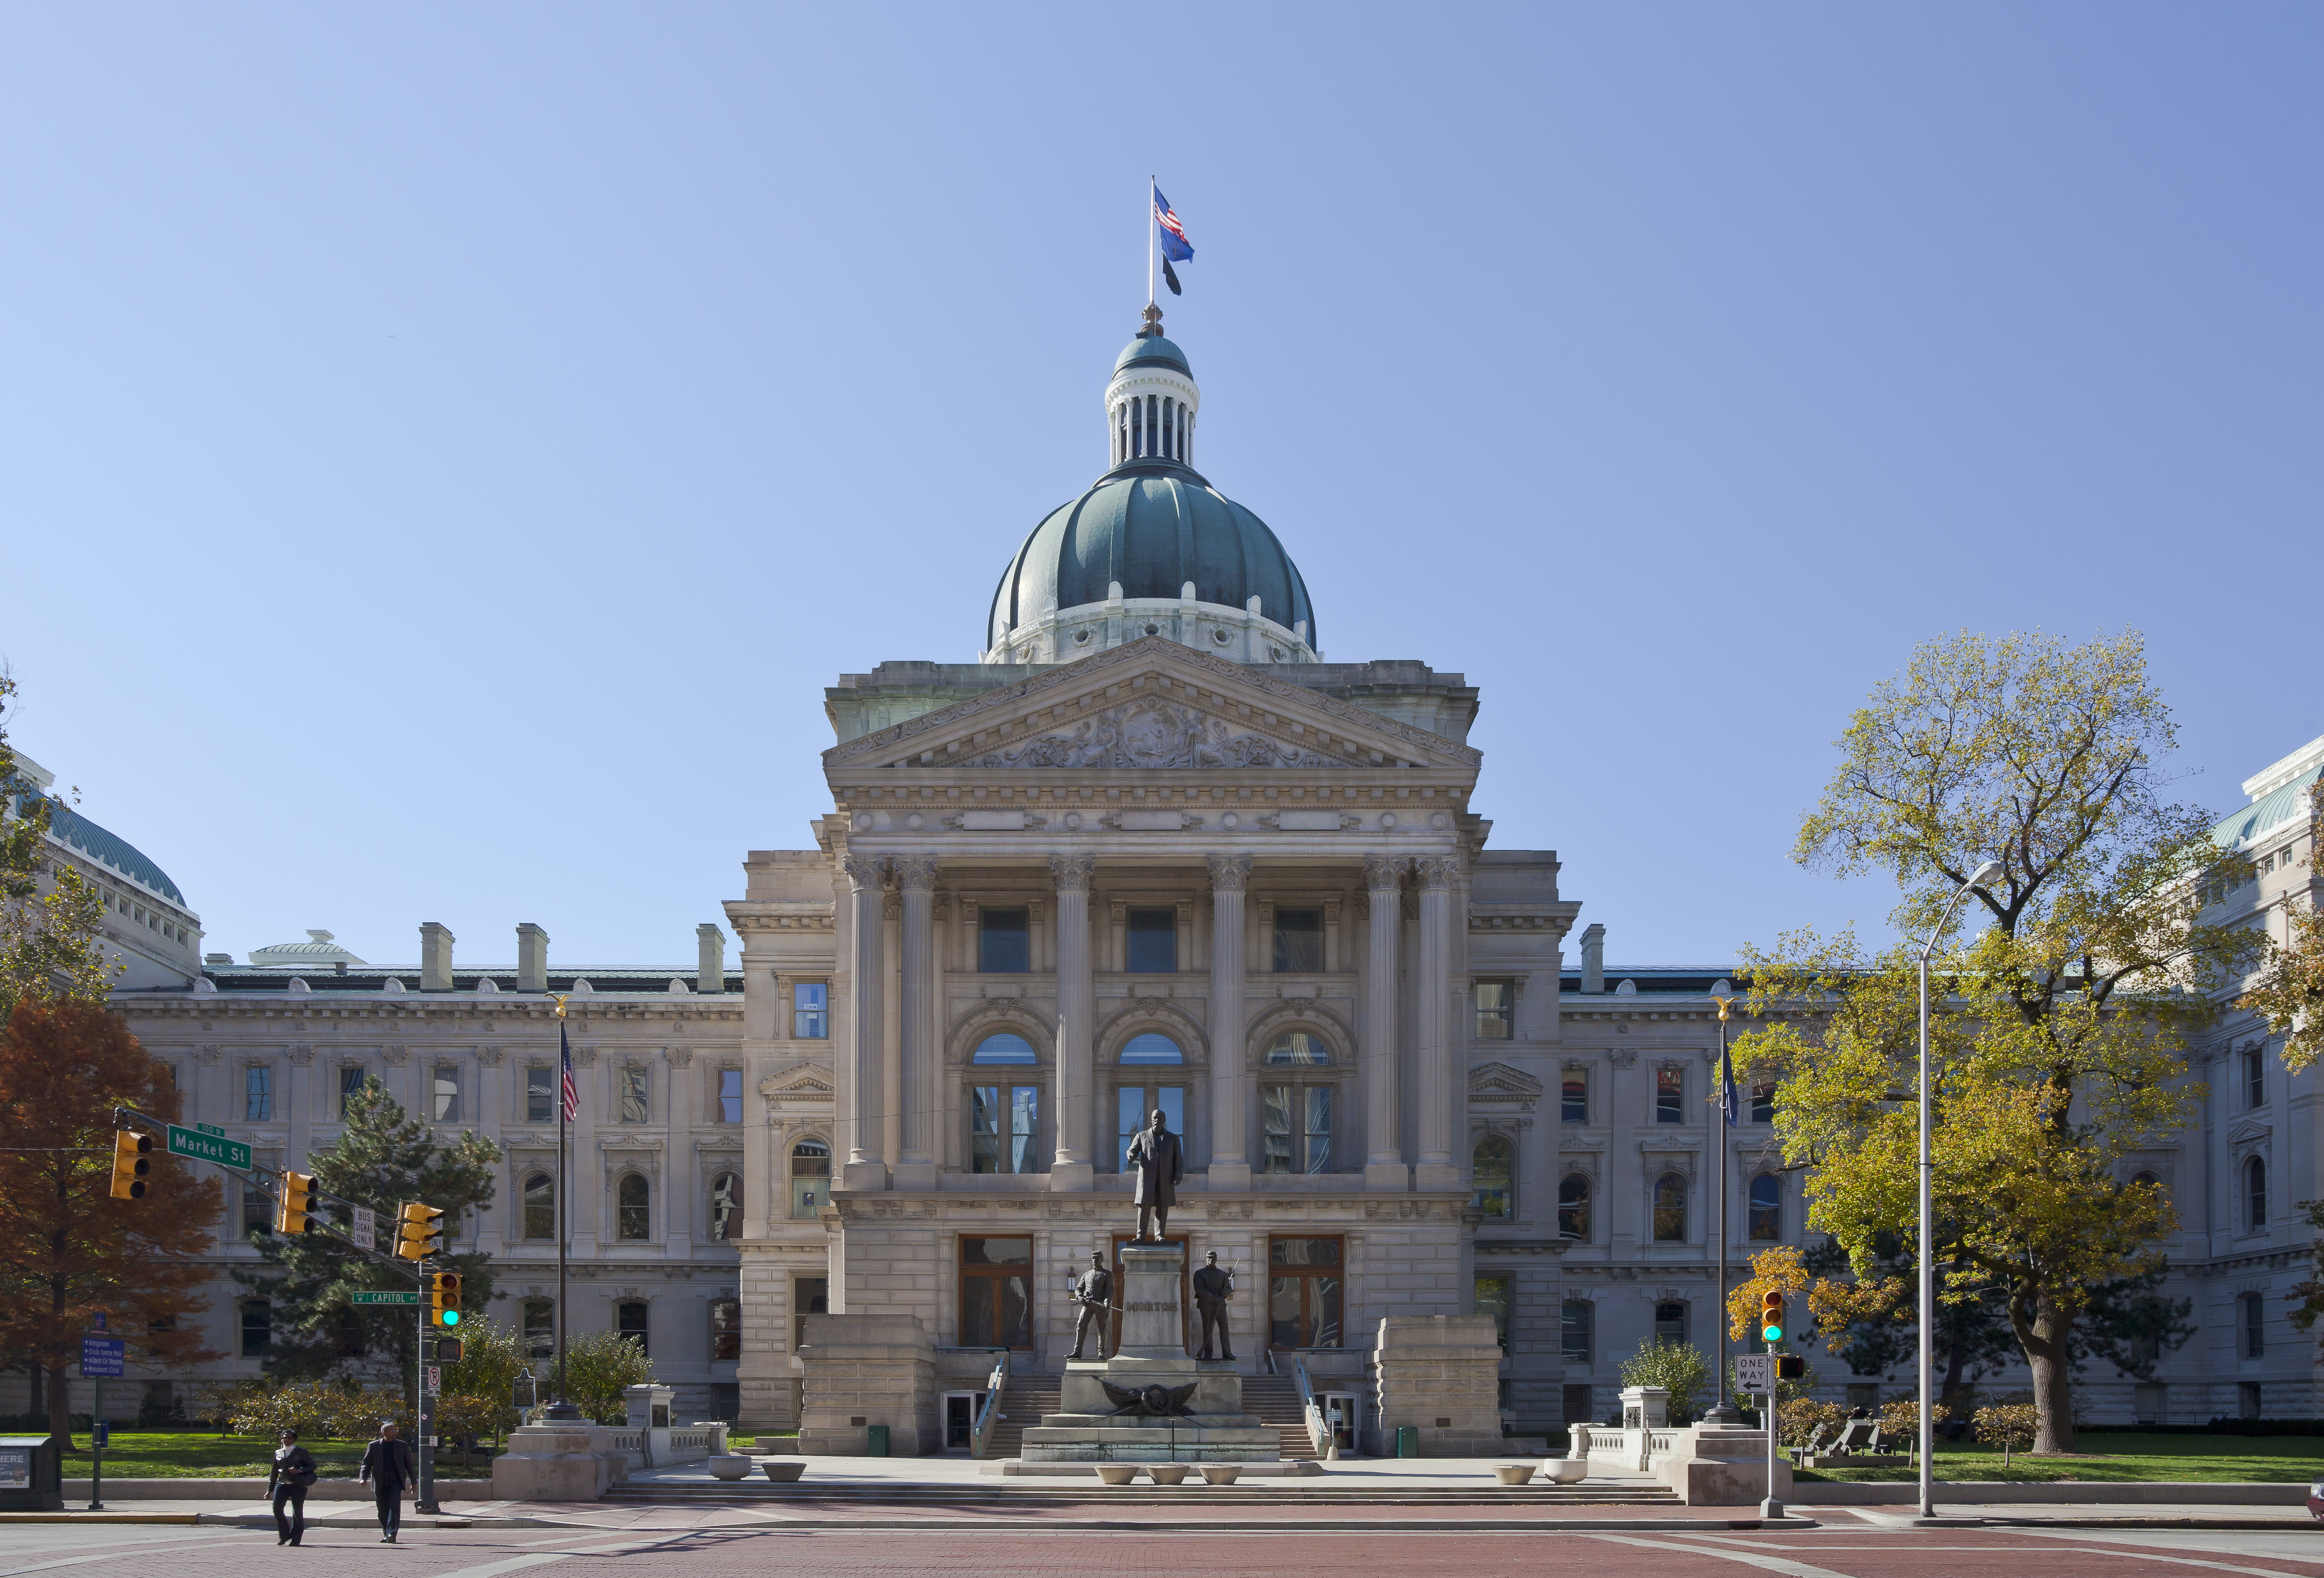 Capitol del Estado de Indiana, Indianápolis, Estados Unidos, 2012-10-22, DD 08